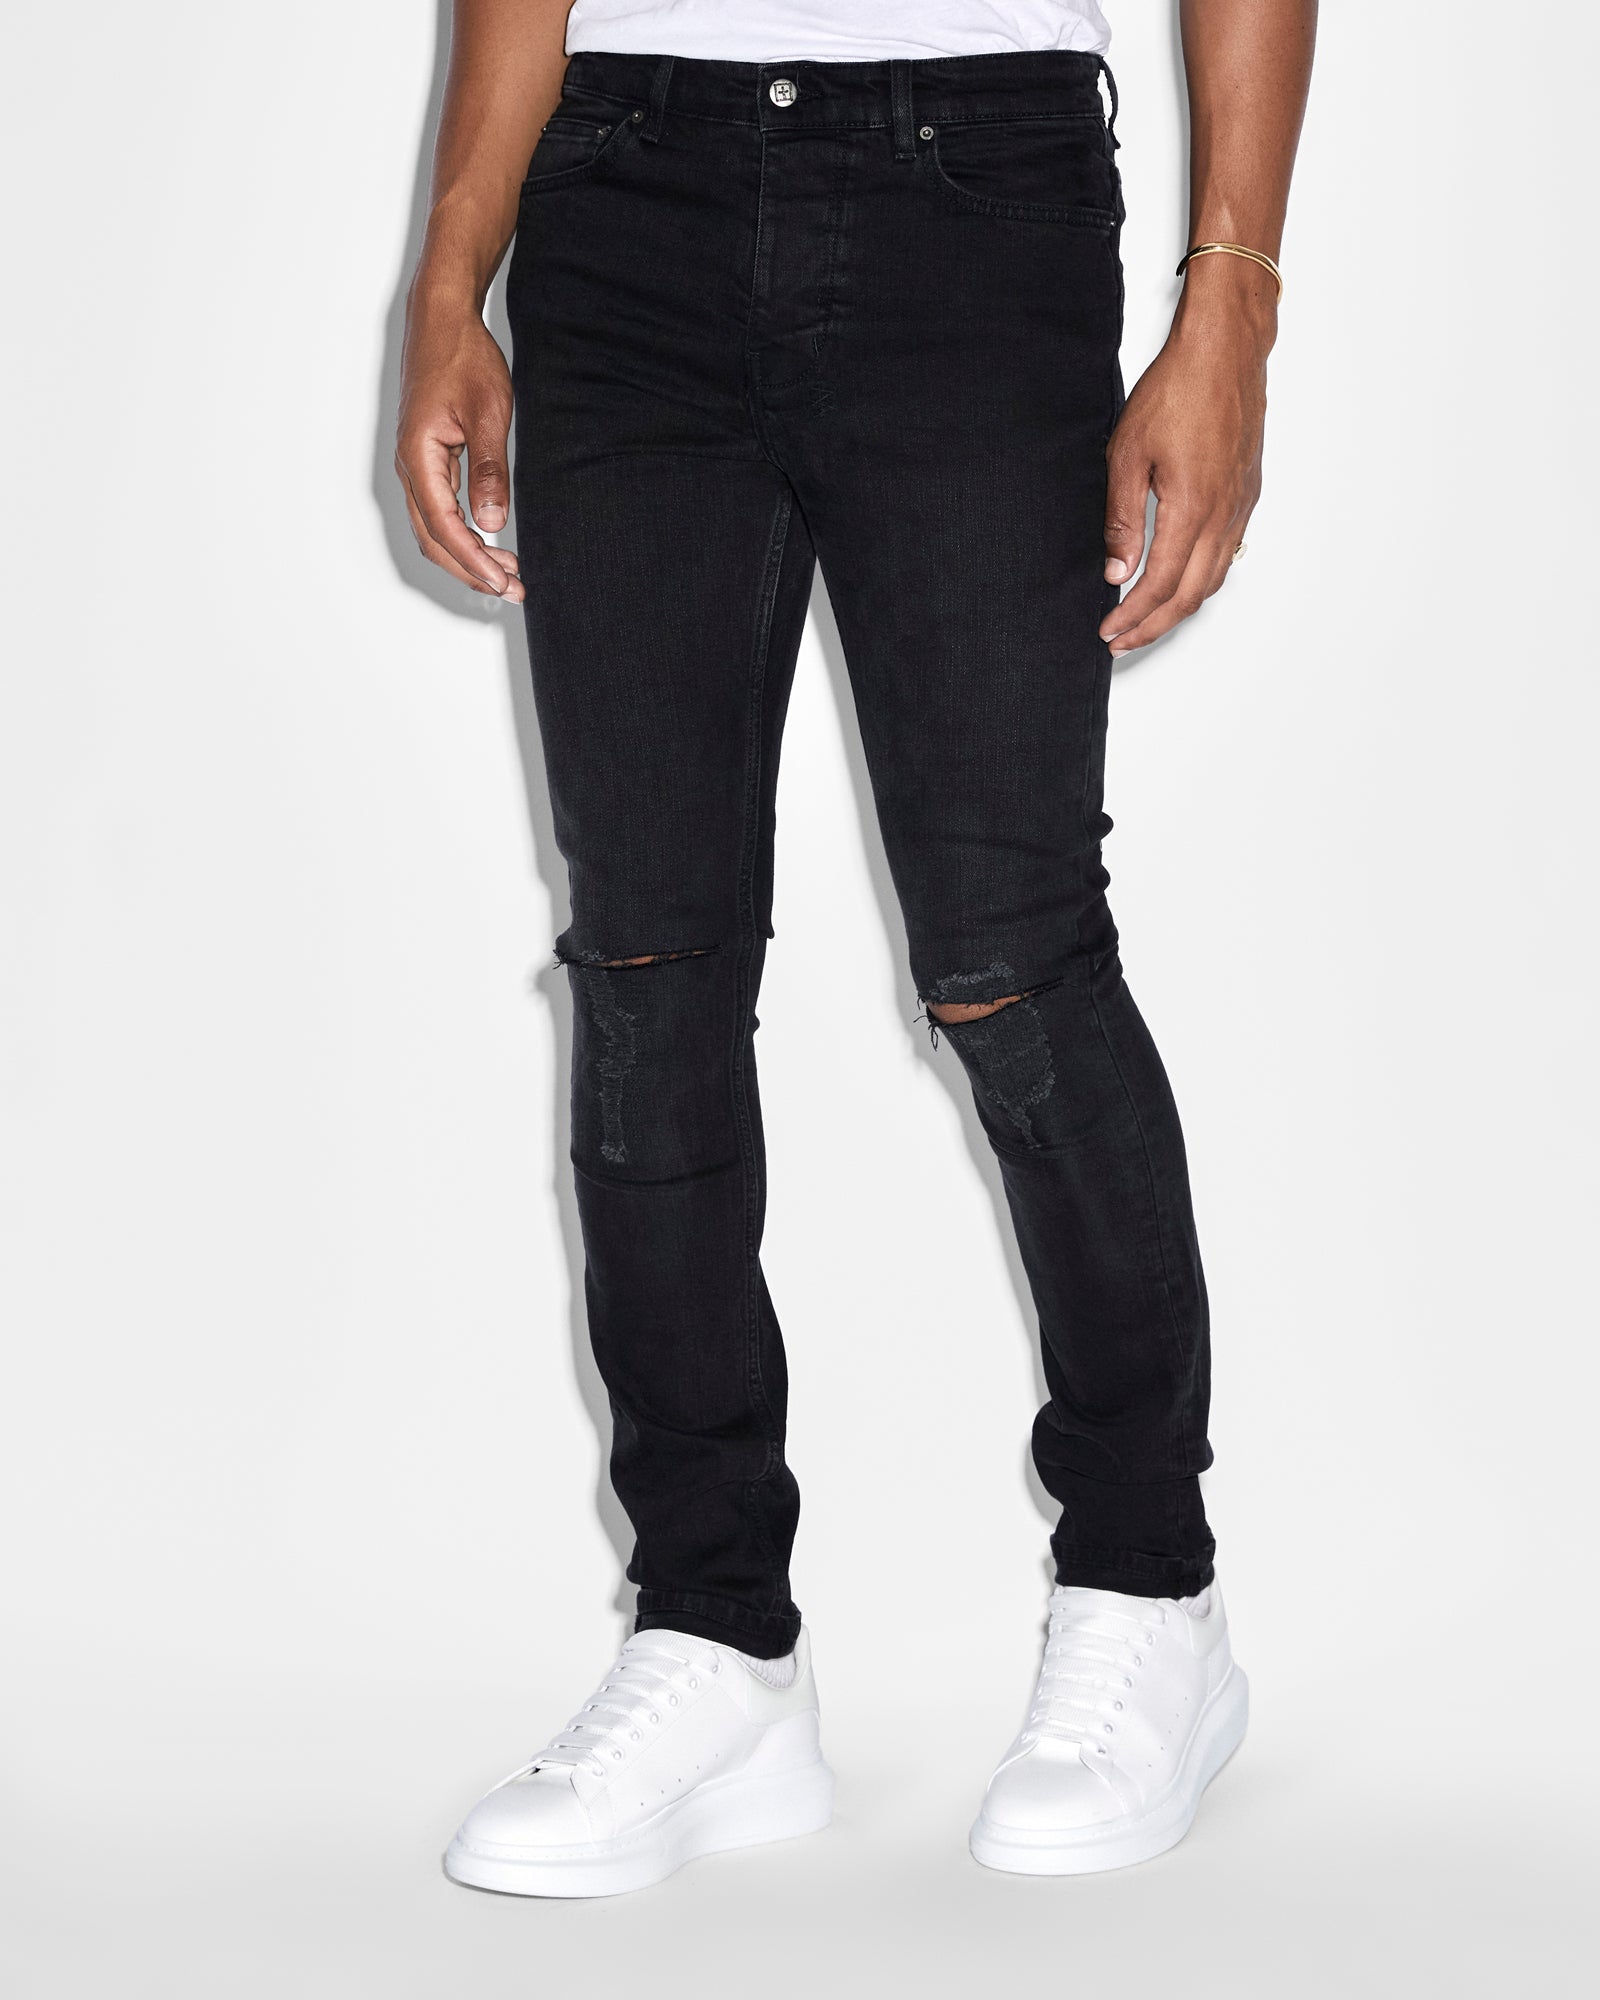 Buy Ksubi Chitch Krow Krushed | Men's Black Slim Fit Jeans | Ksubi ++